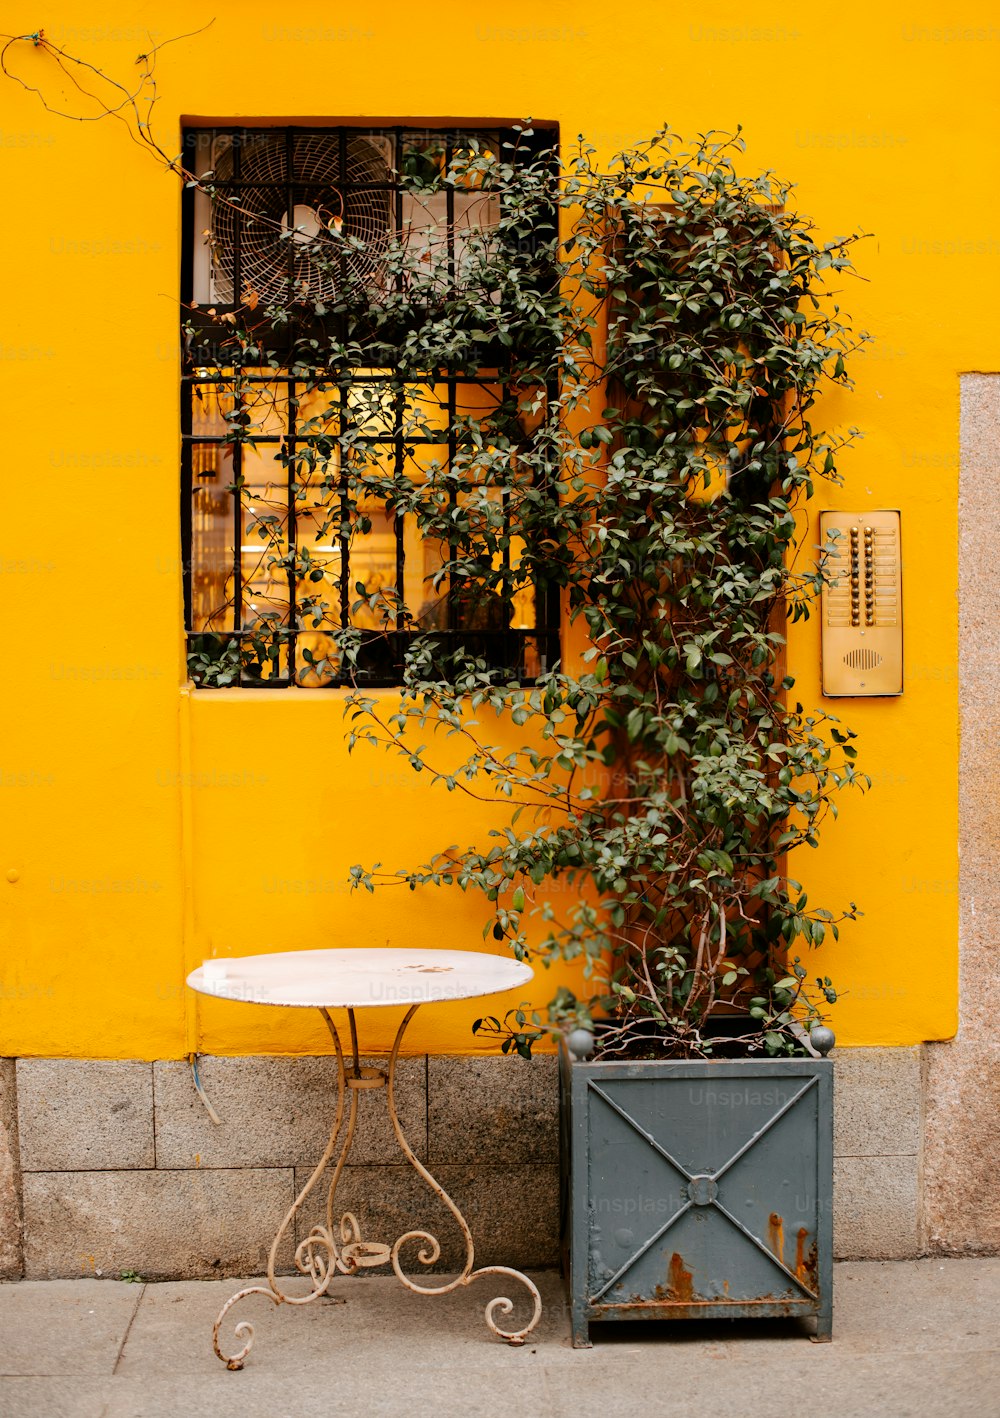 Une petite table et une plante devant un bâtiment jaune